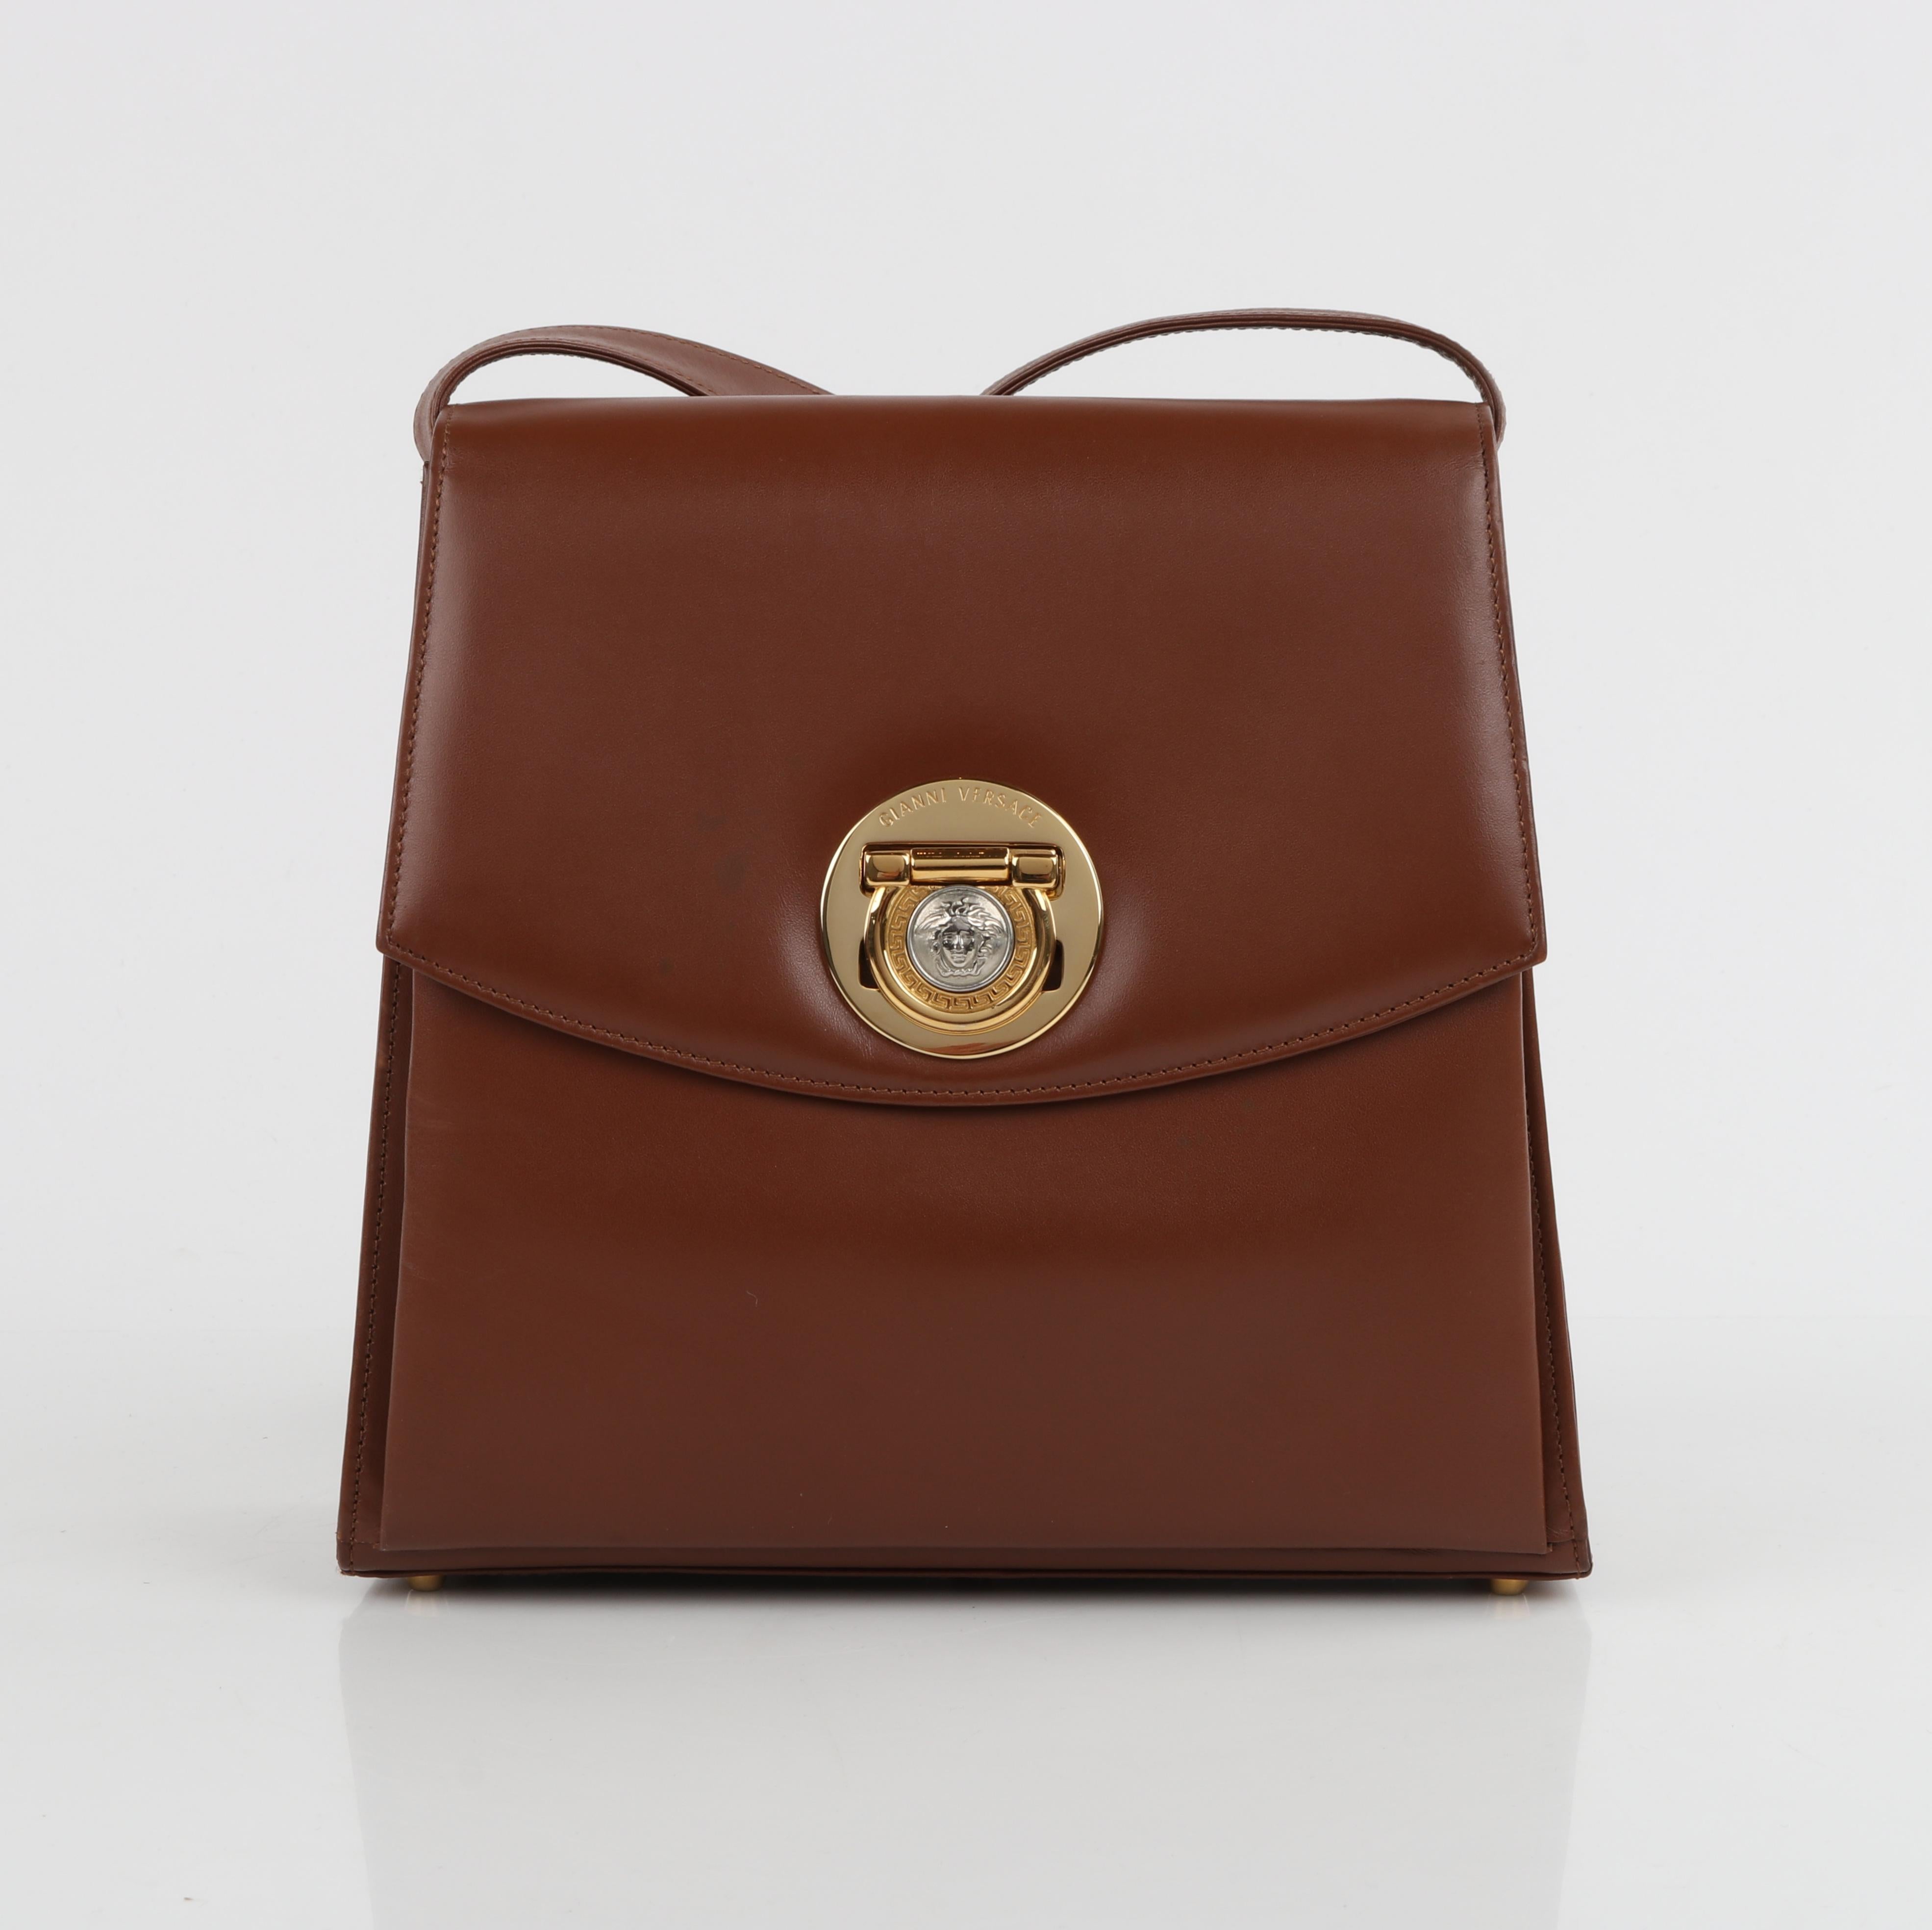 GIANNI VERSACE c.1993 Brown Leather Medusa Emblem Coin Lock Shoulder Bag Purse For Sale 4